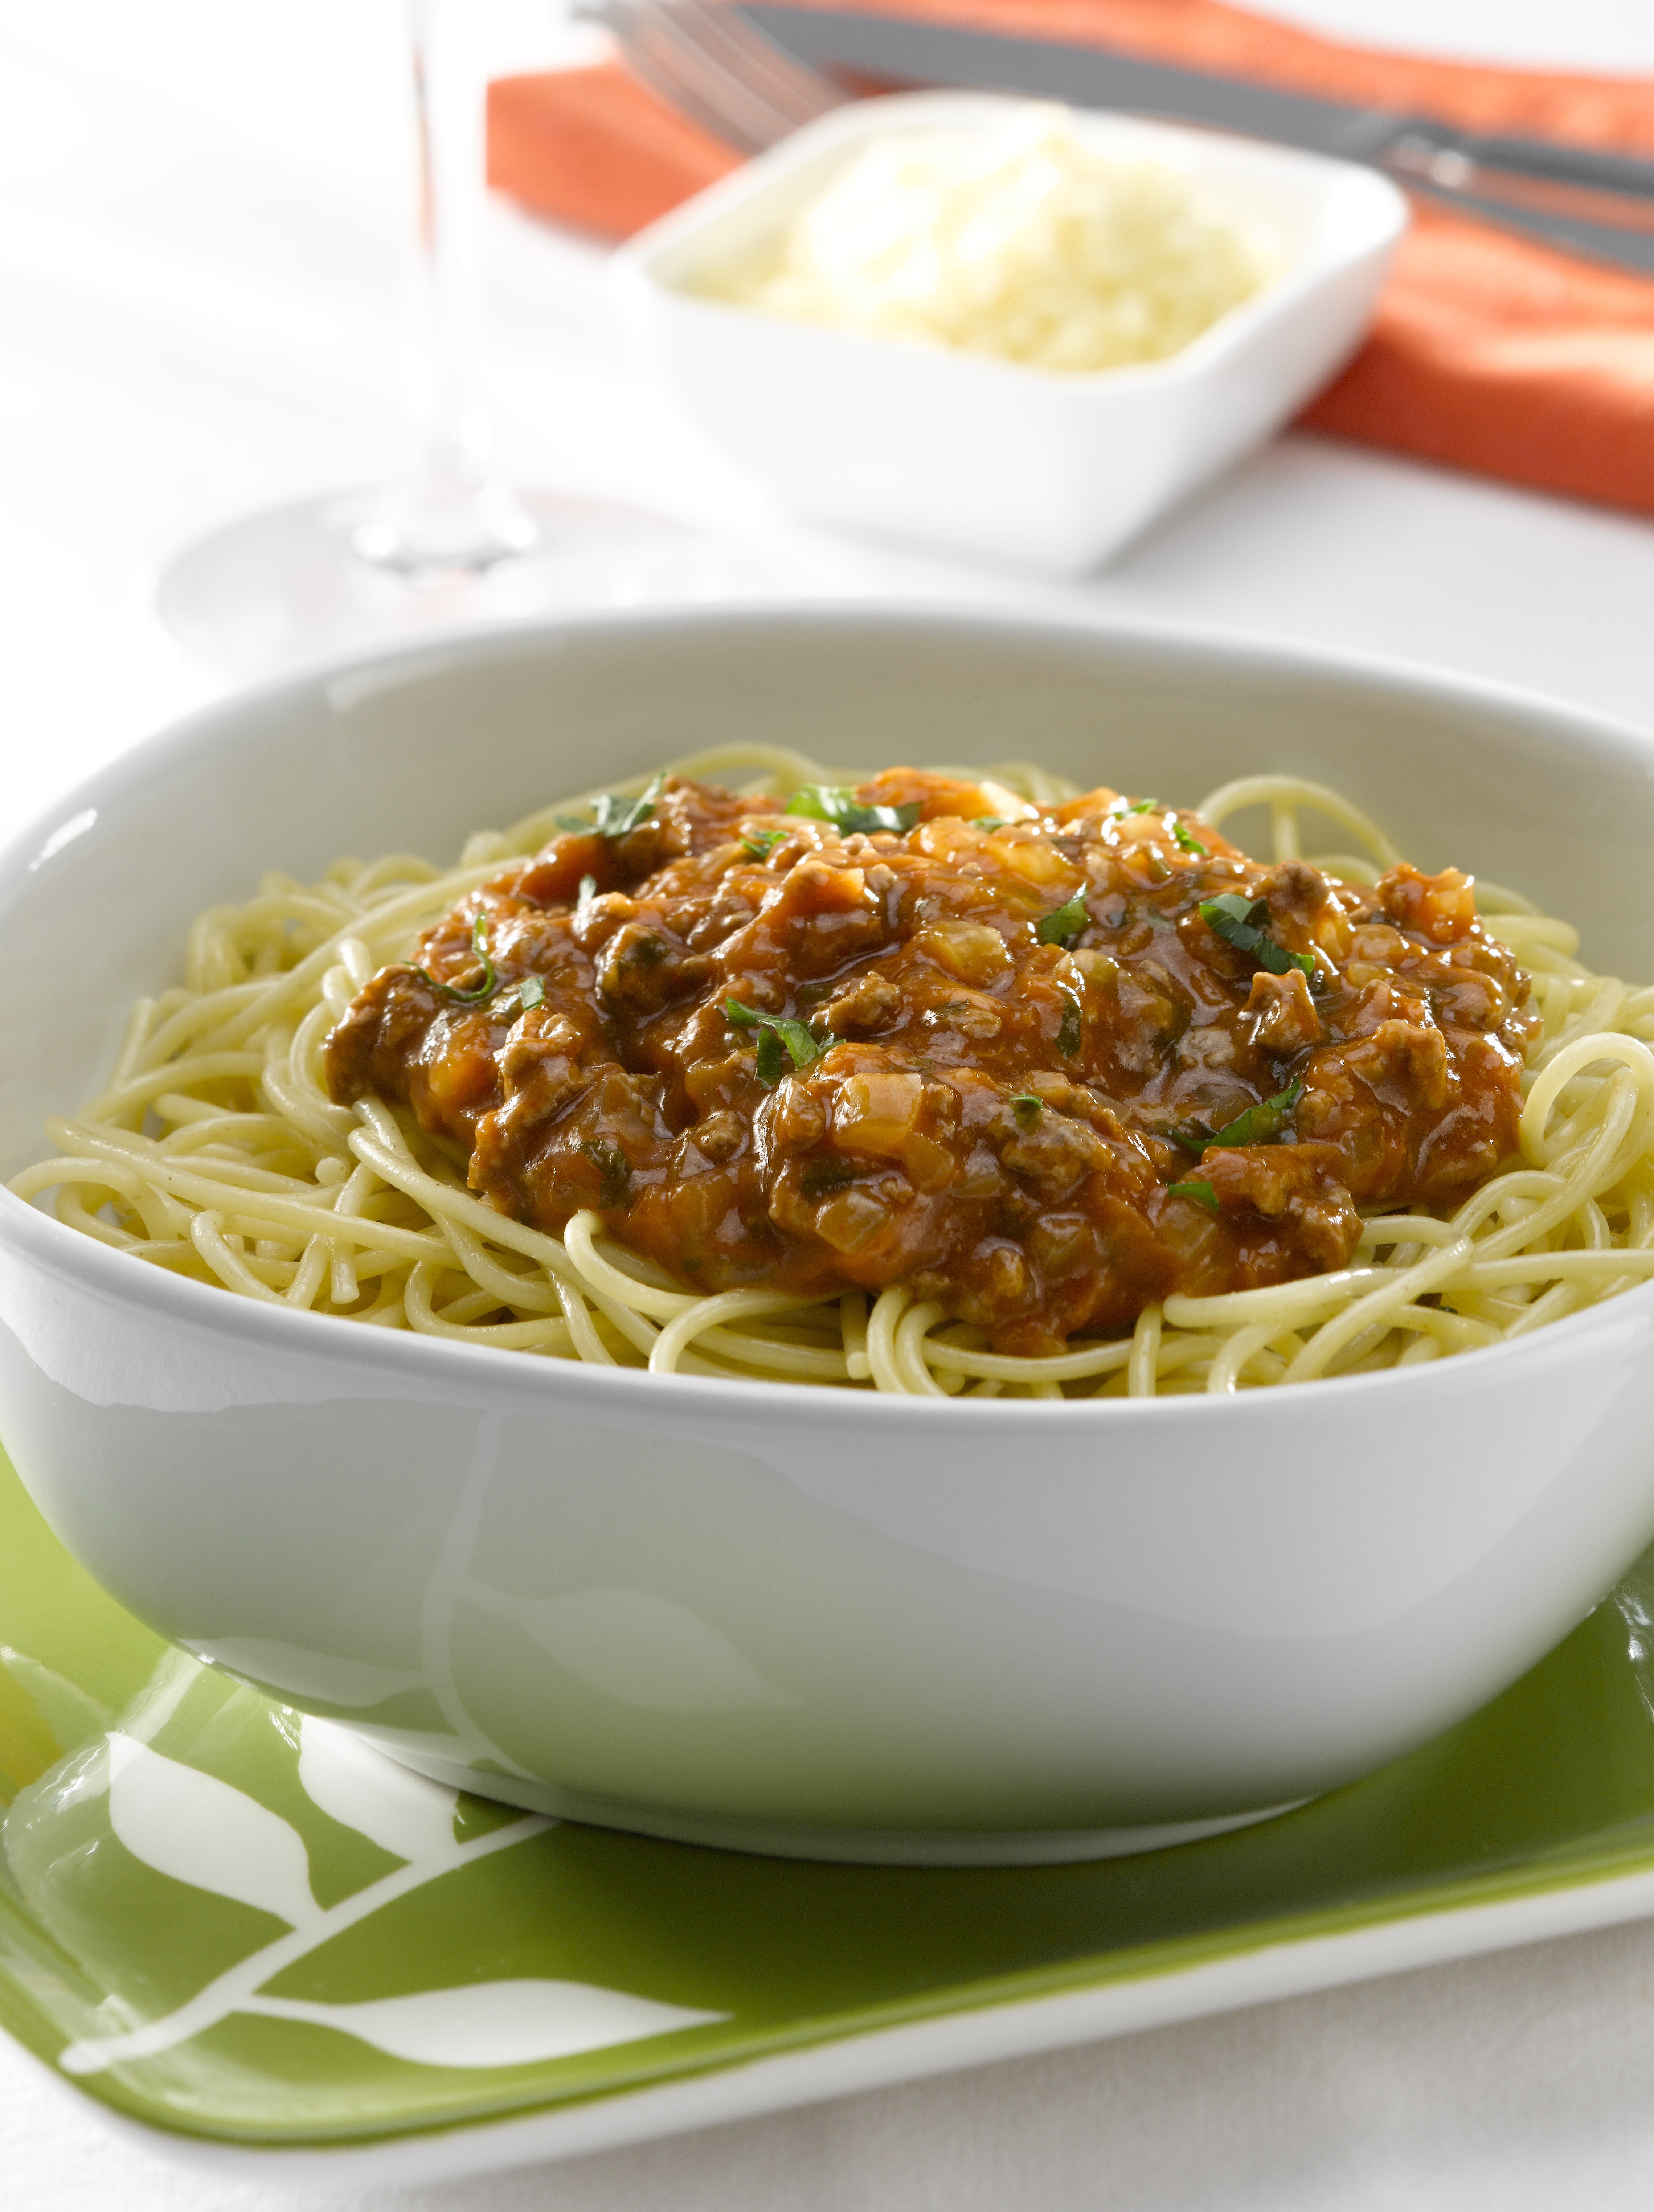 Spaghetti con Salsa Bolognesa Tradicional